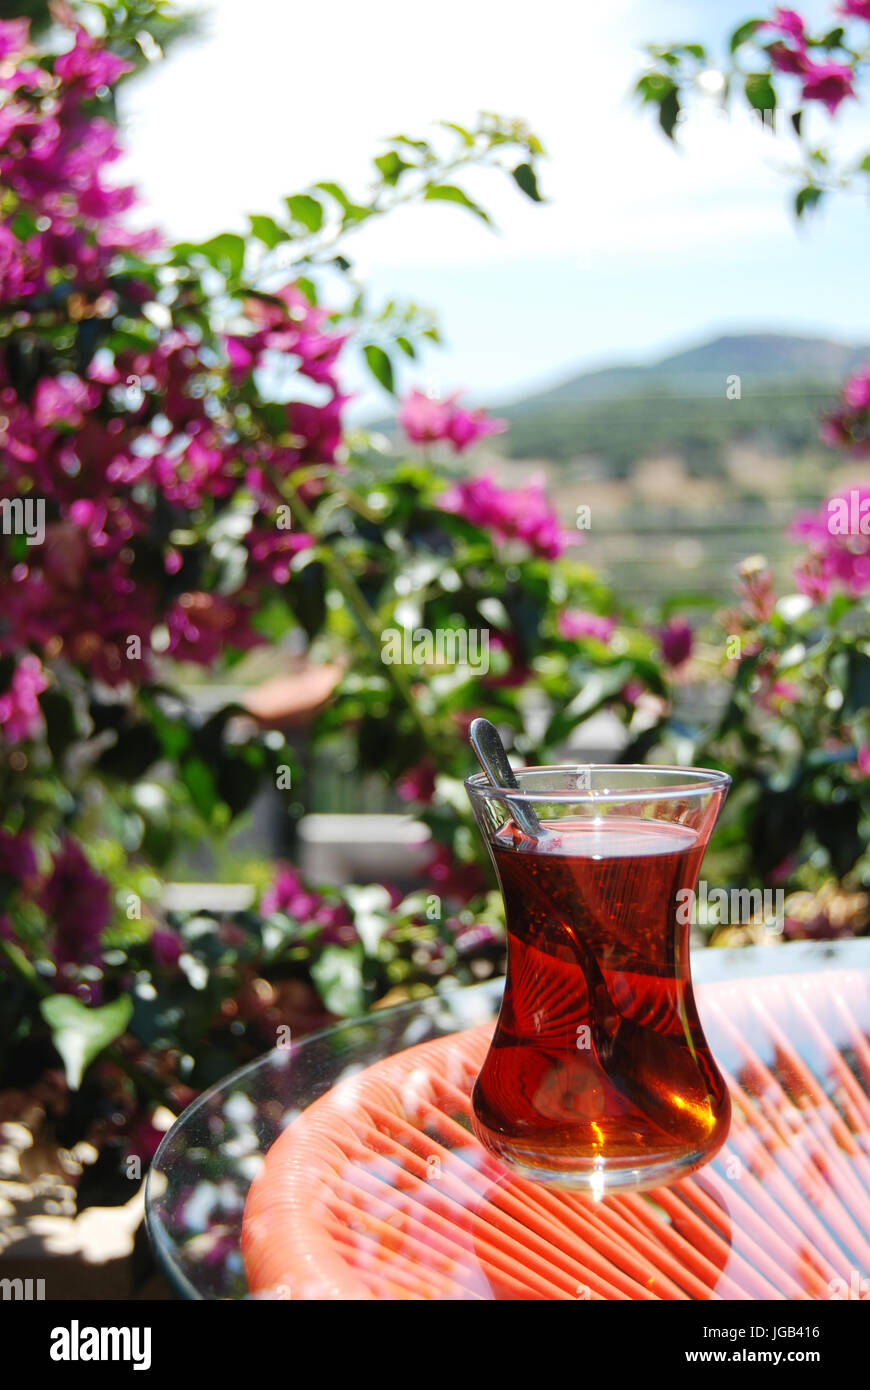 Turkish tea closeup Stock Photo